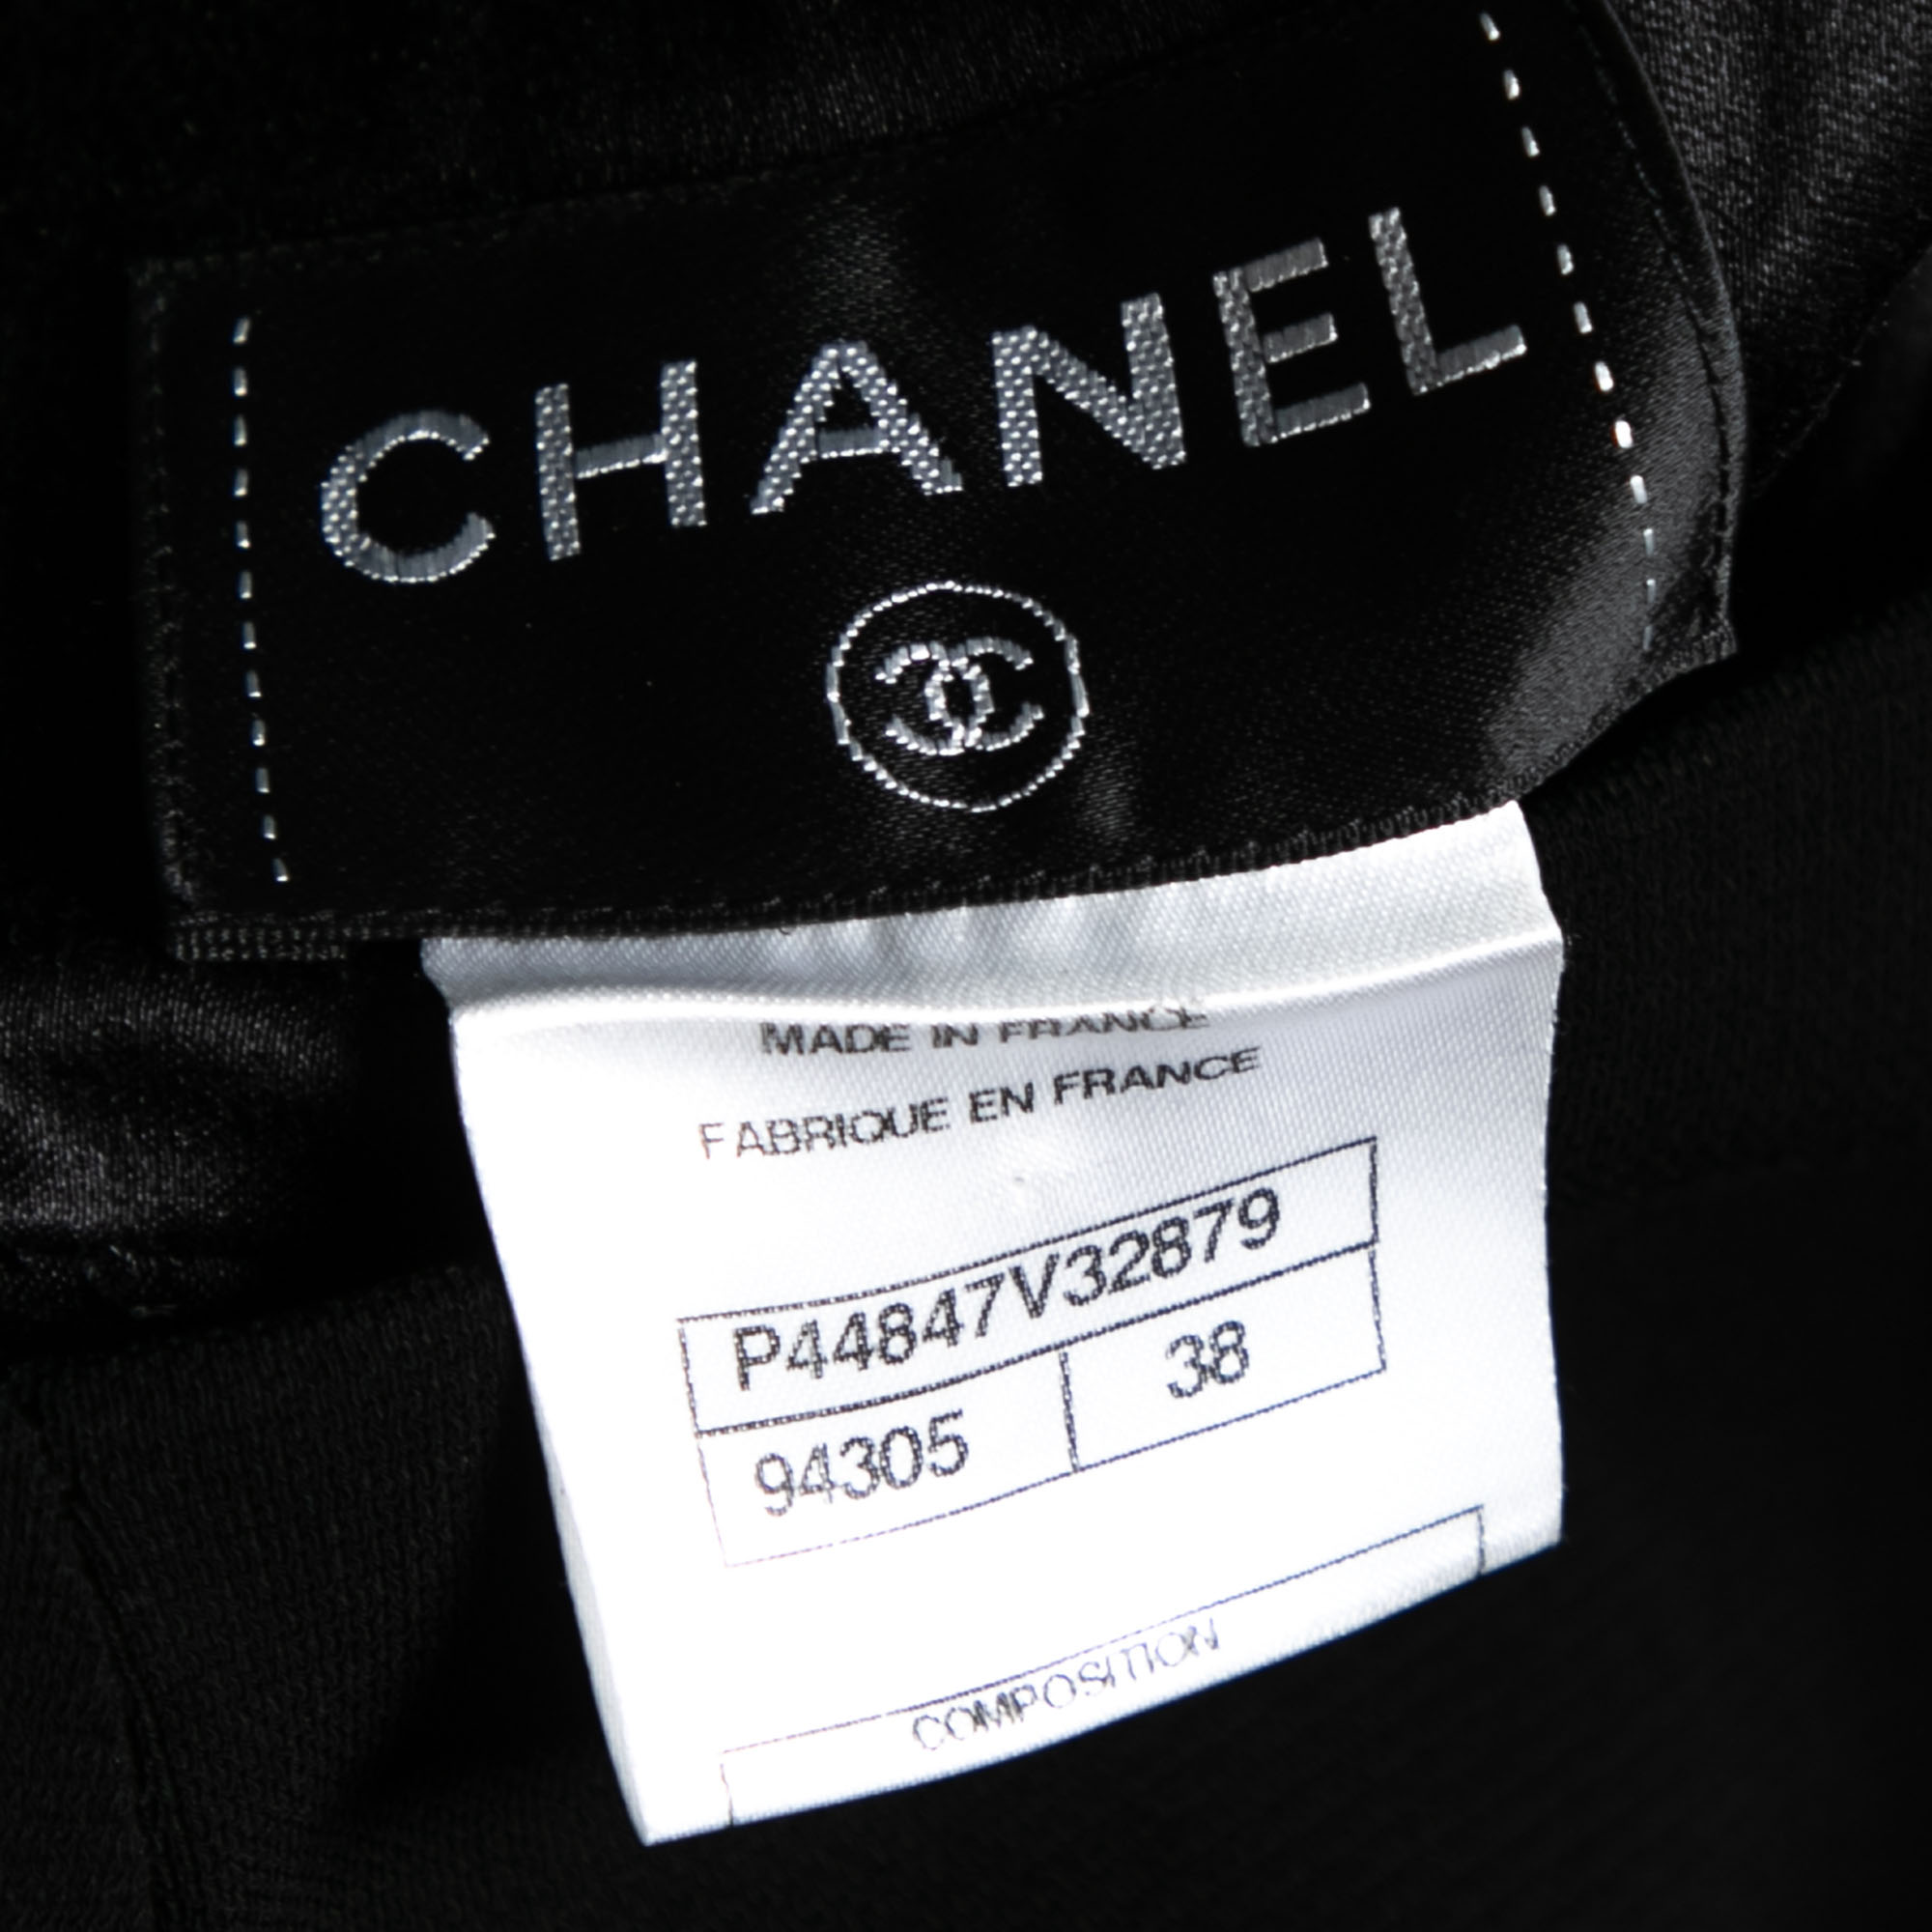 Chanel Black Stretch Knit Cut-Out Back Detail Midi Dress M